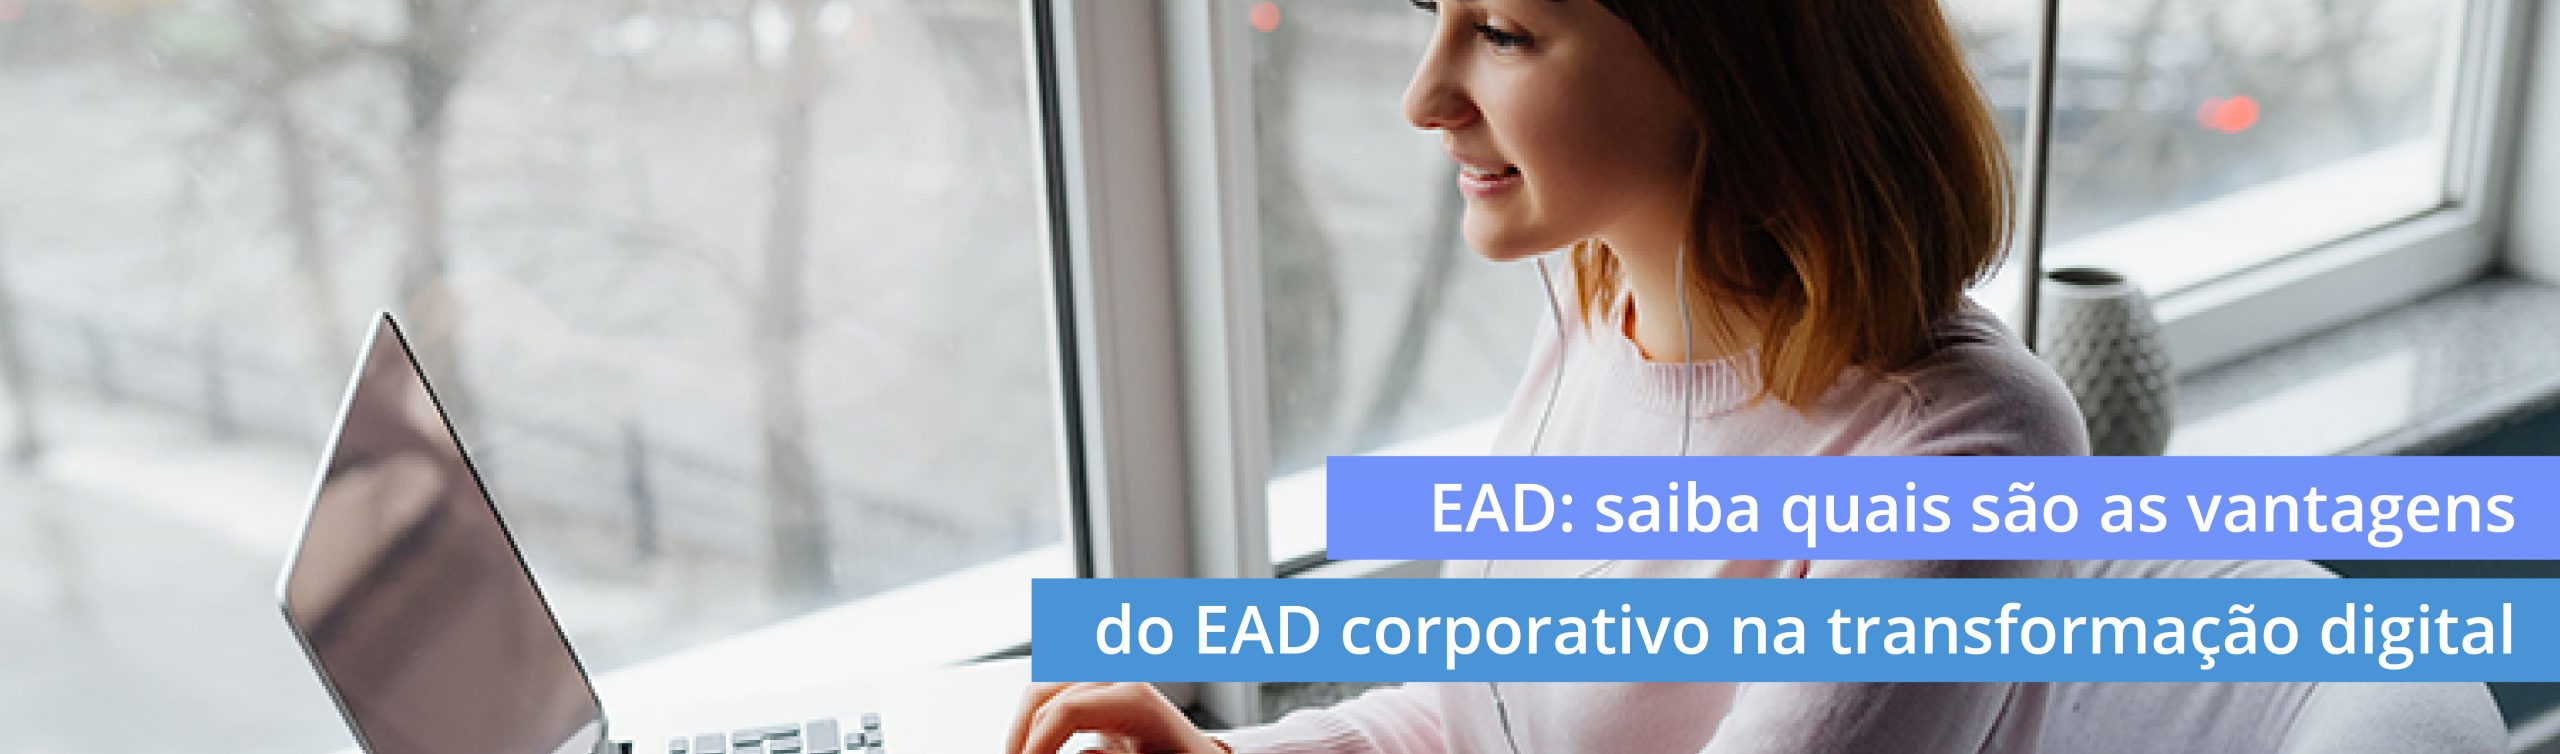 EAD: saiba quais são as vantagens do EAD corporativo na transformação digital